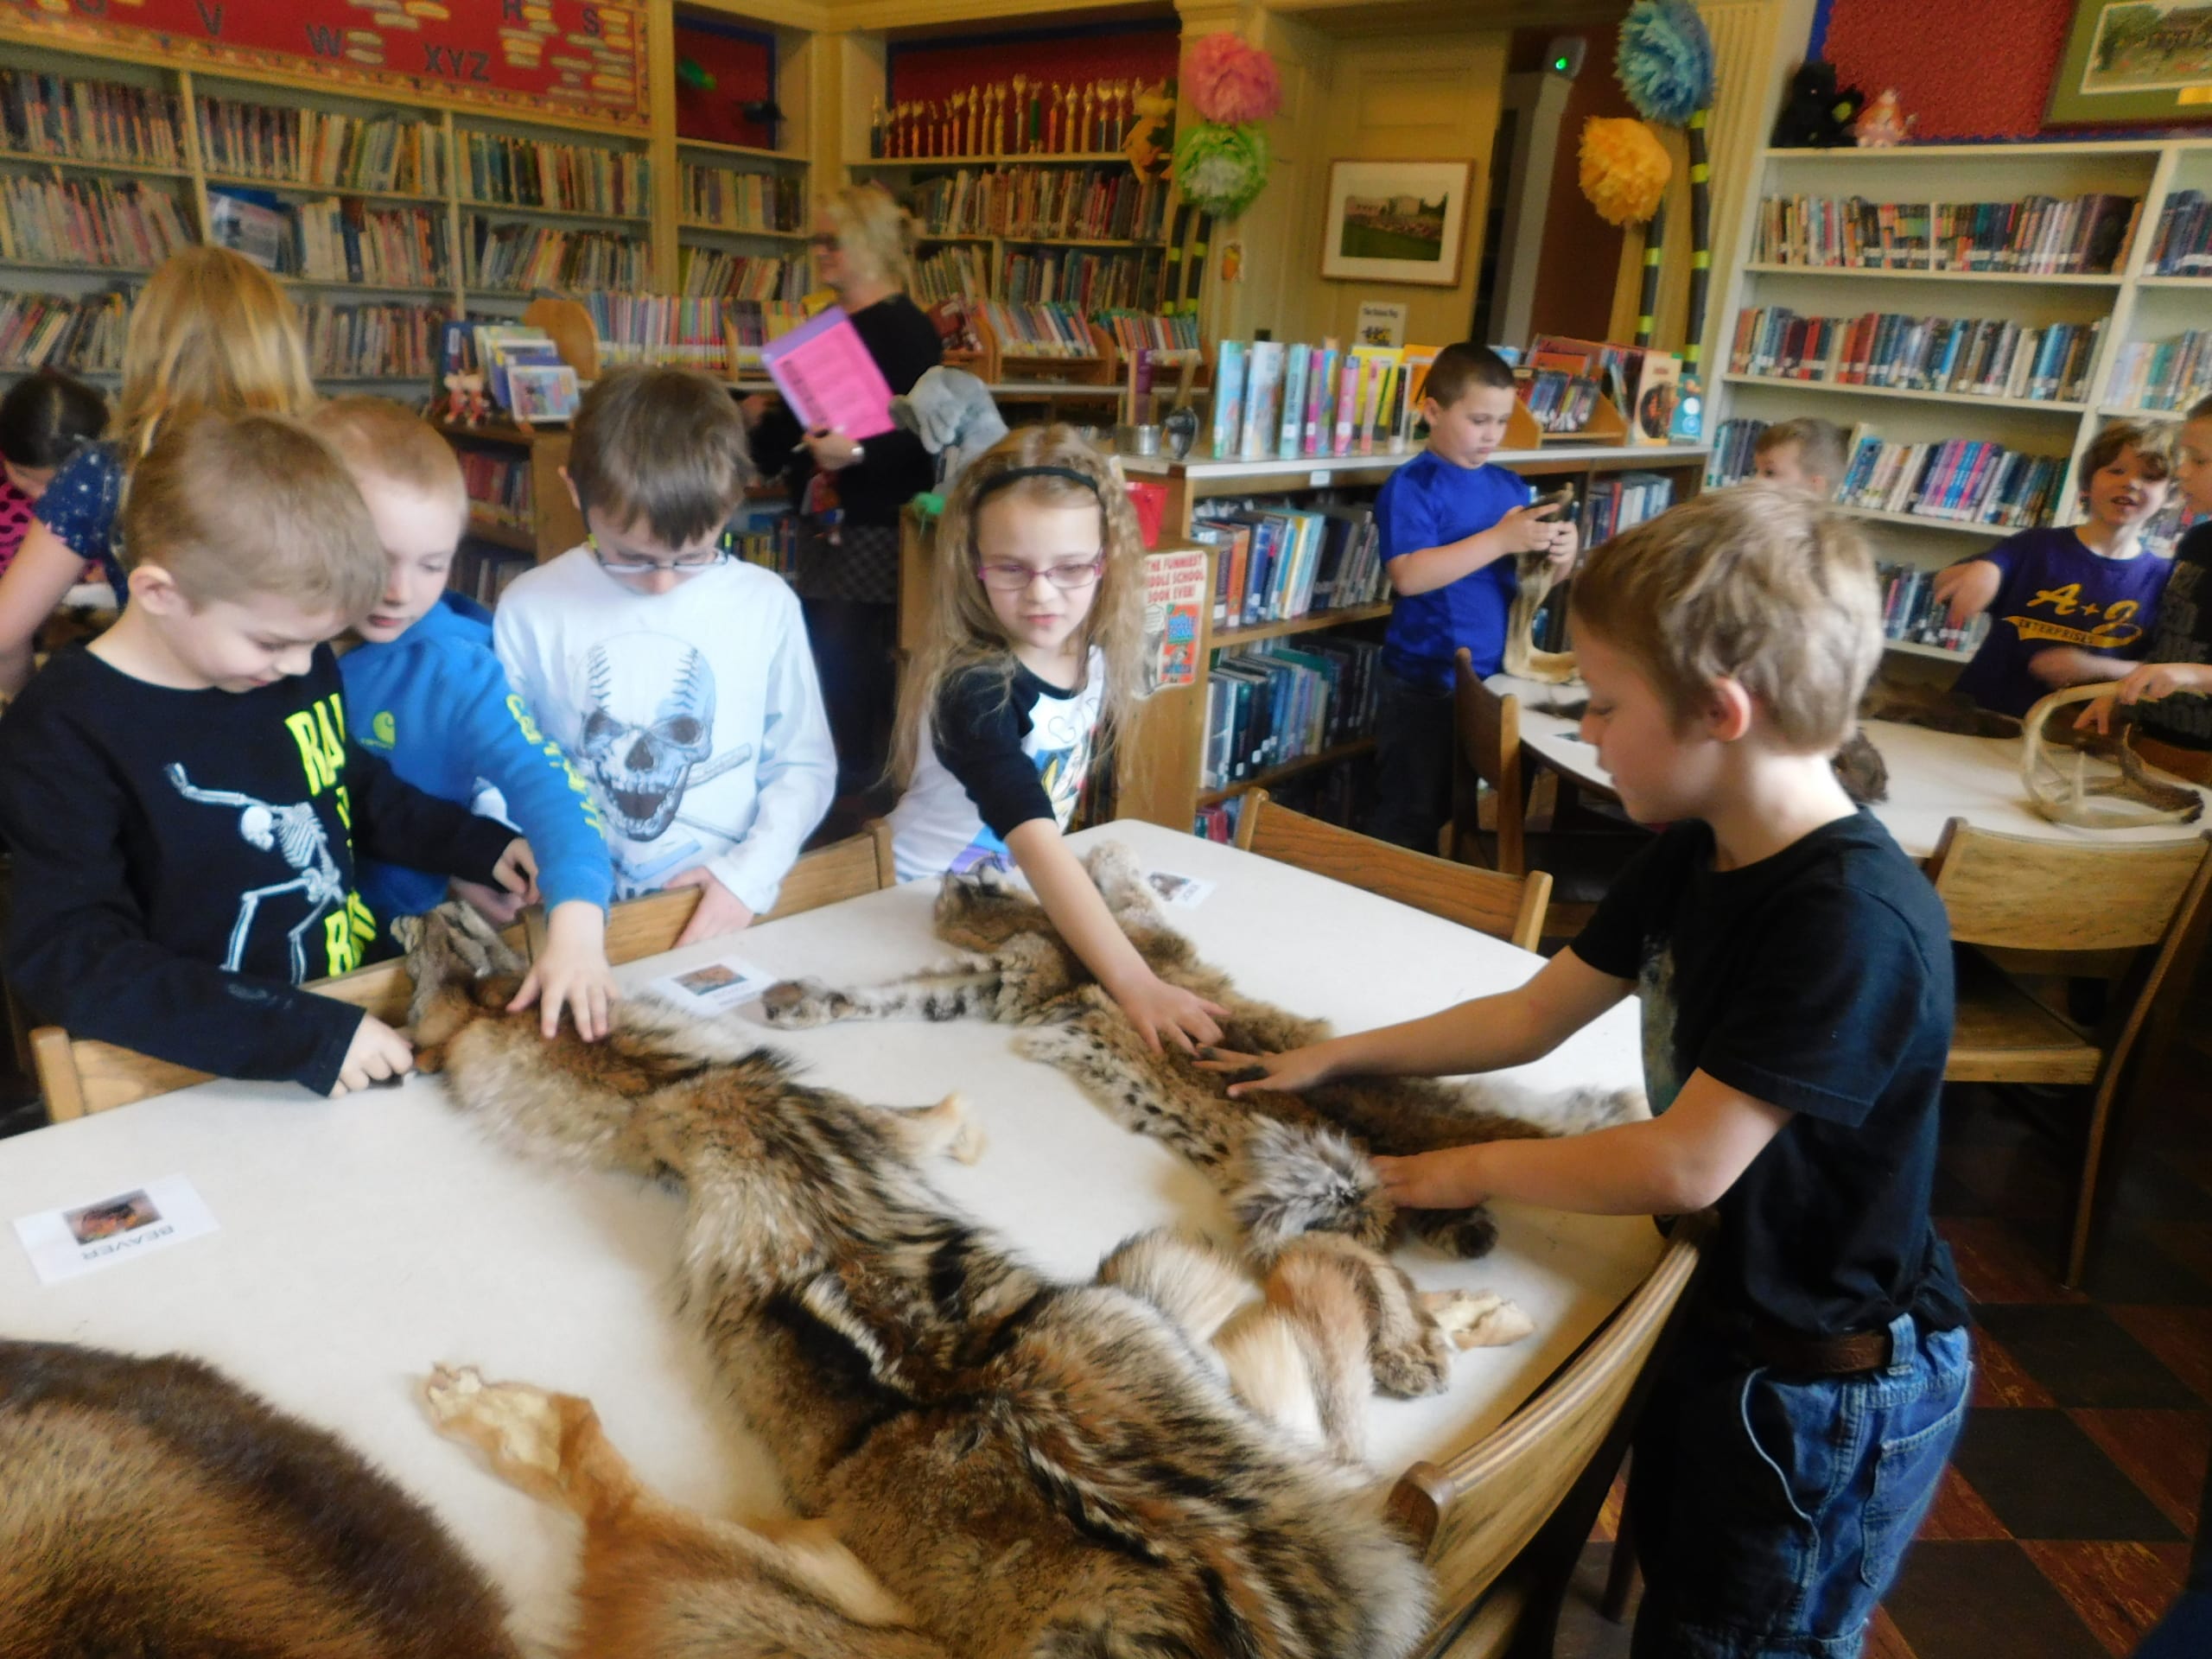 Un grupo de jóvenes estudiantes en la biblioteca de su escuela acariciando la piel de varios animales, llevada a su escuela con fines educativos a través del Programa de Divulgación de ADKX.